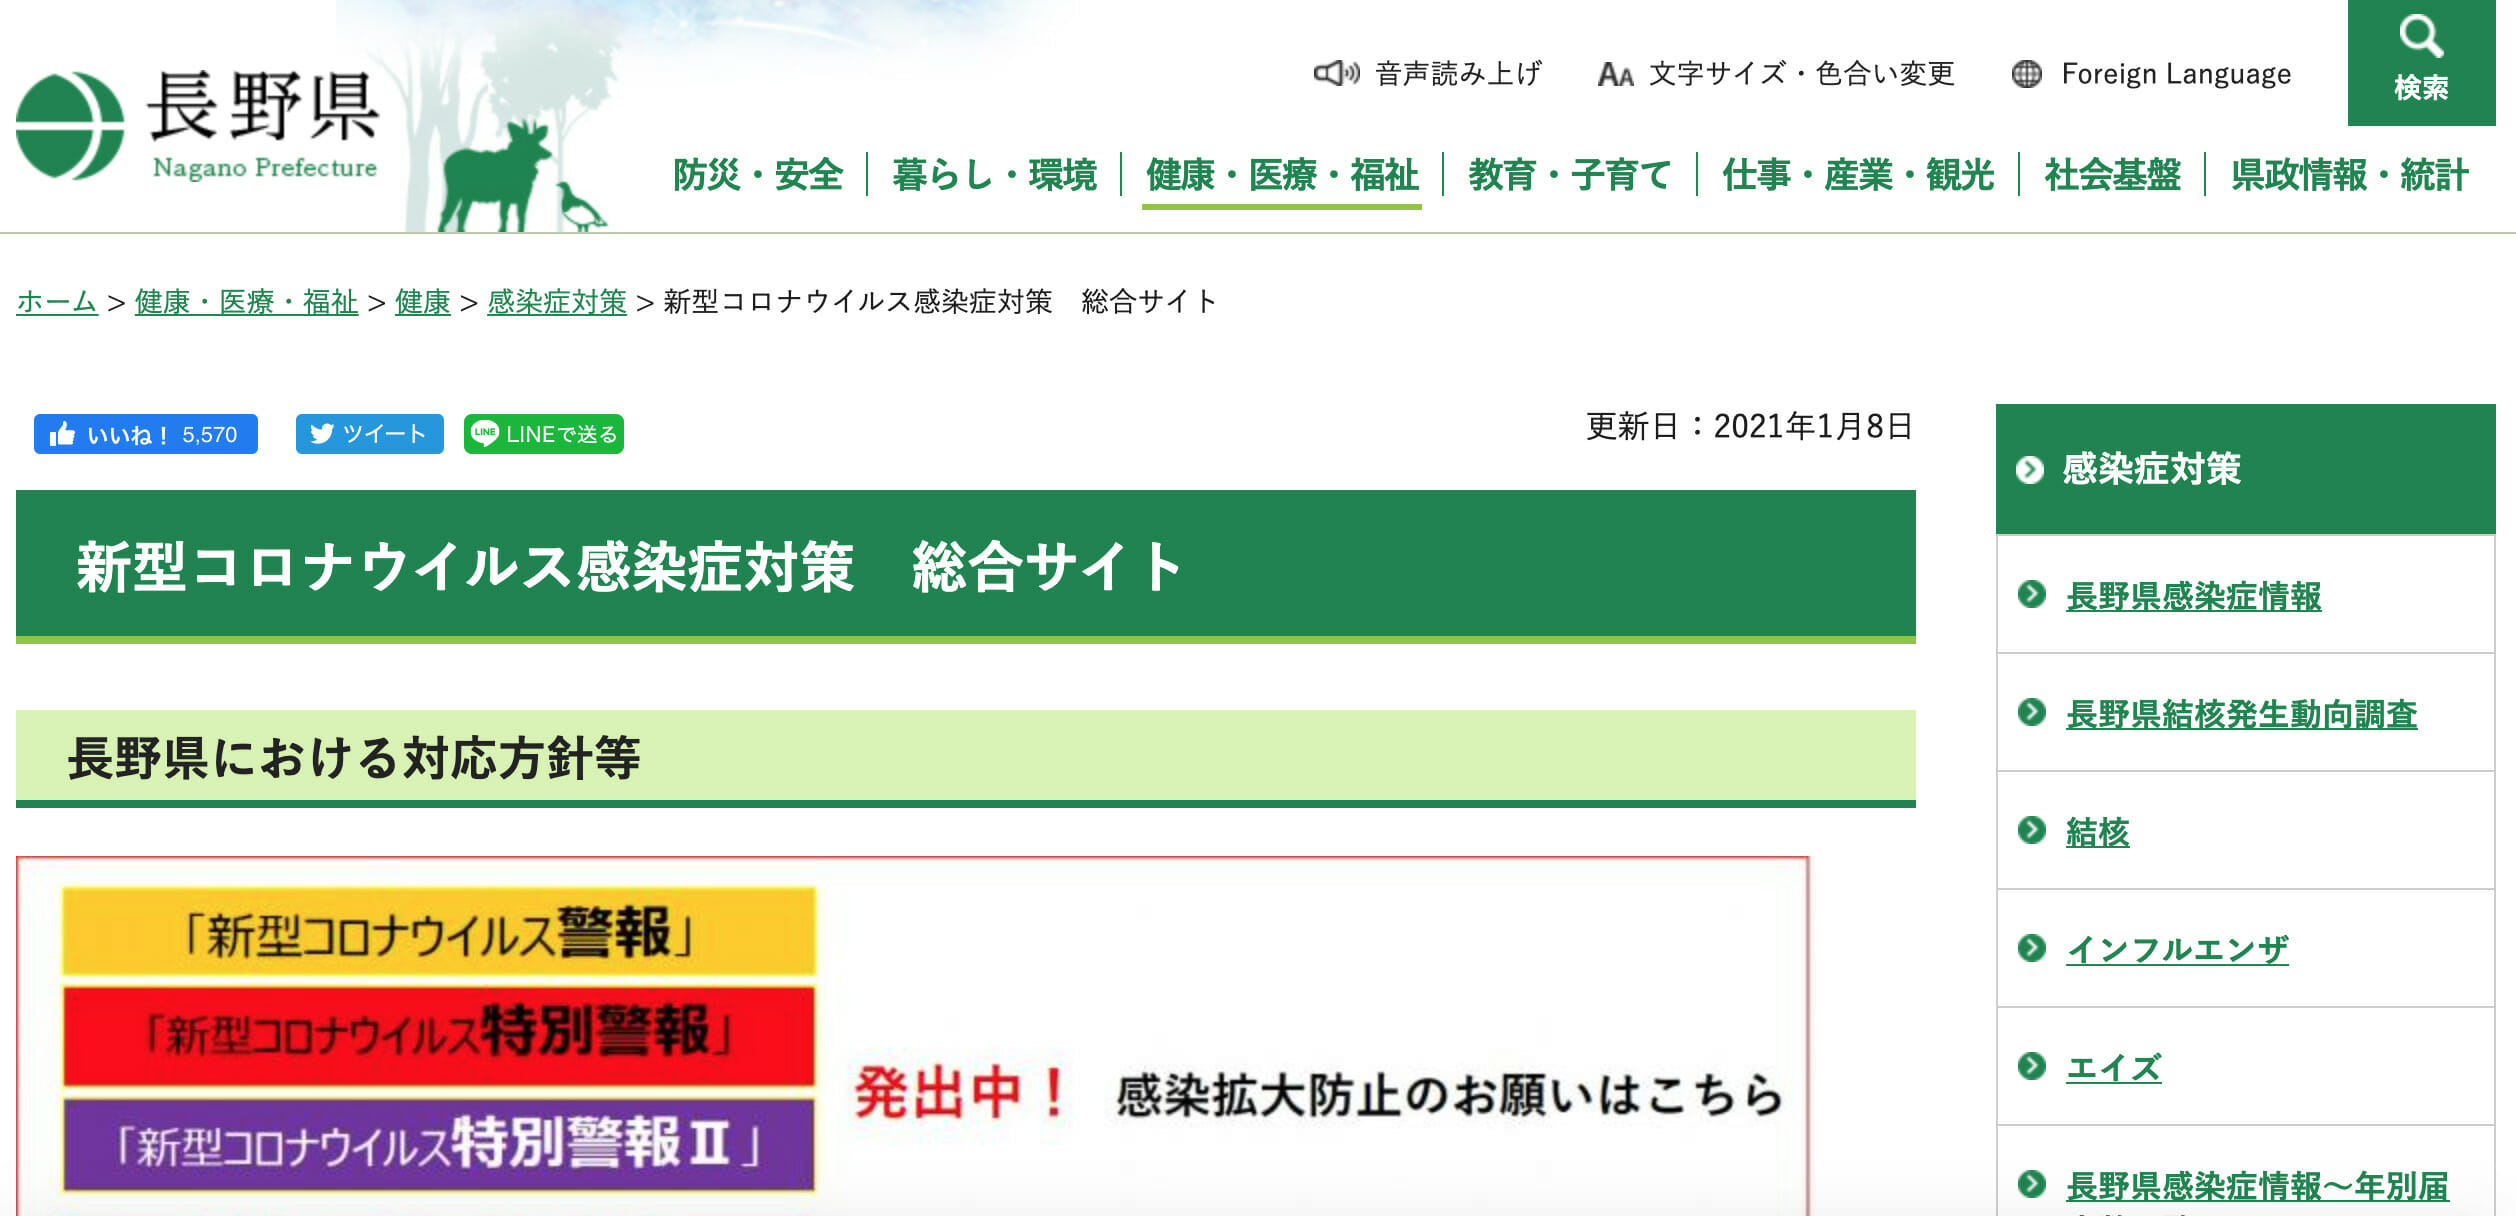 長野県の新型コロナウイルス感染症への対応状況